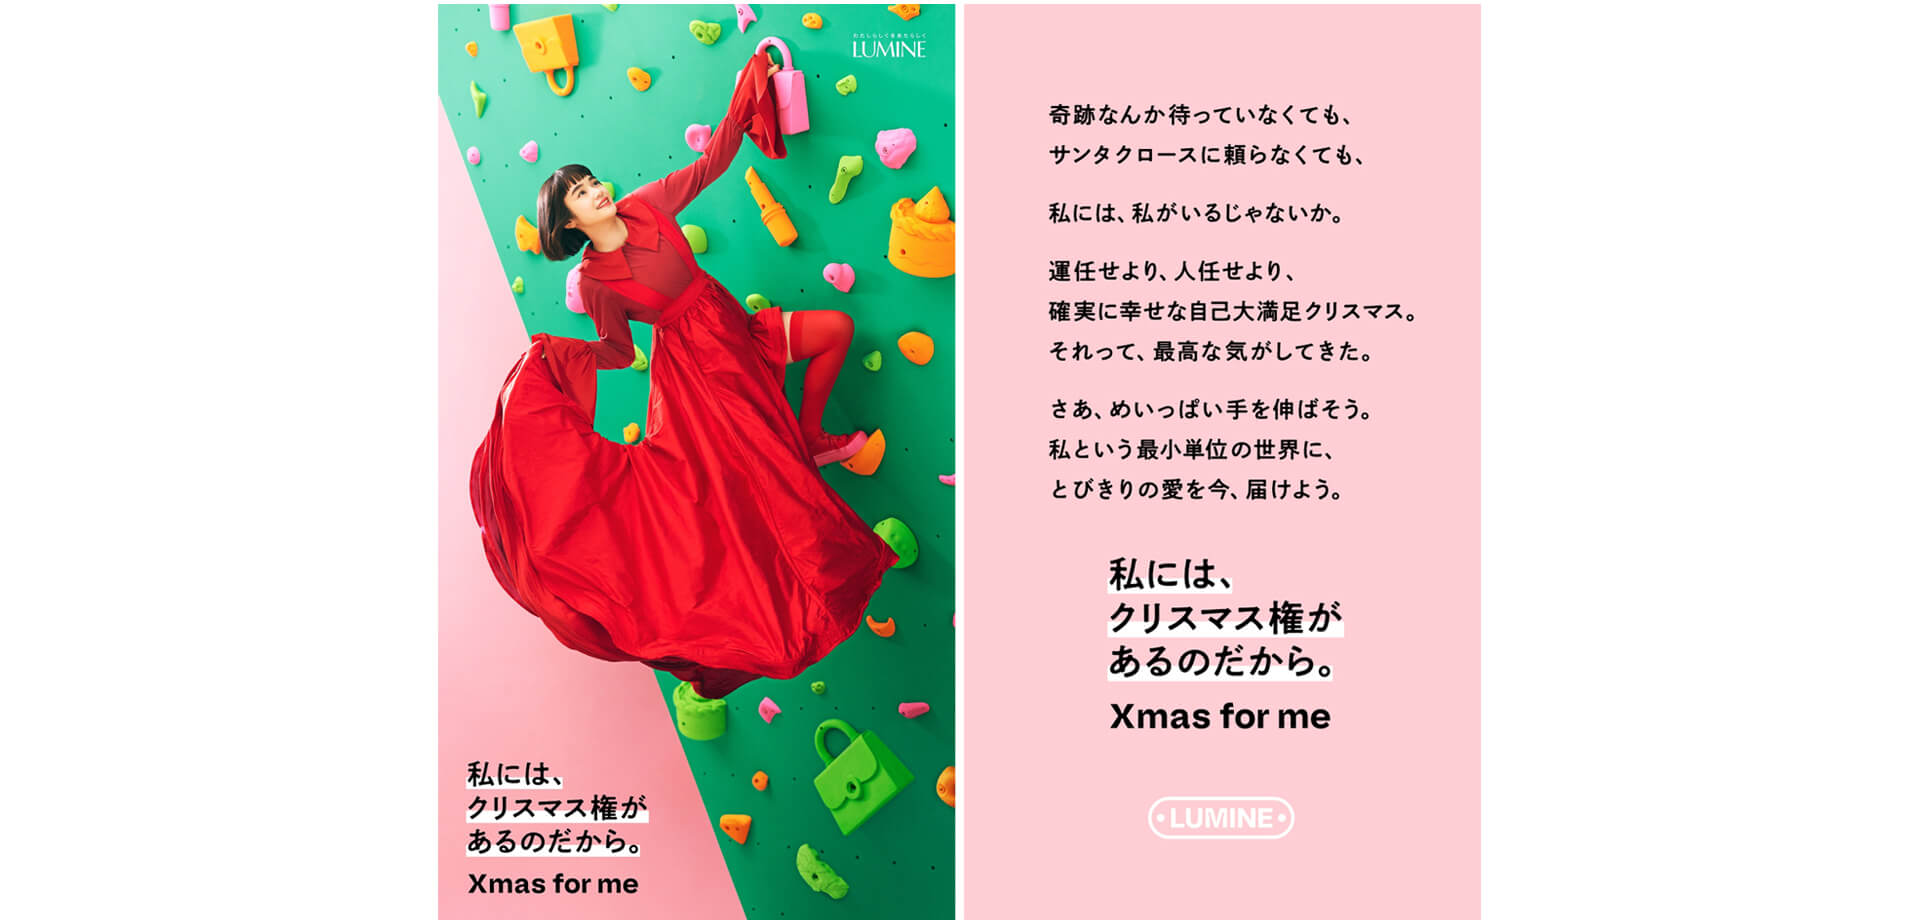 ルミネクリスマスの体験イベント ルミネ新宿 「for me GIFT SHOP」 「for me GIFT GACHA」